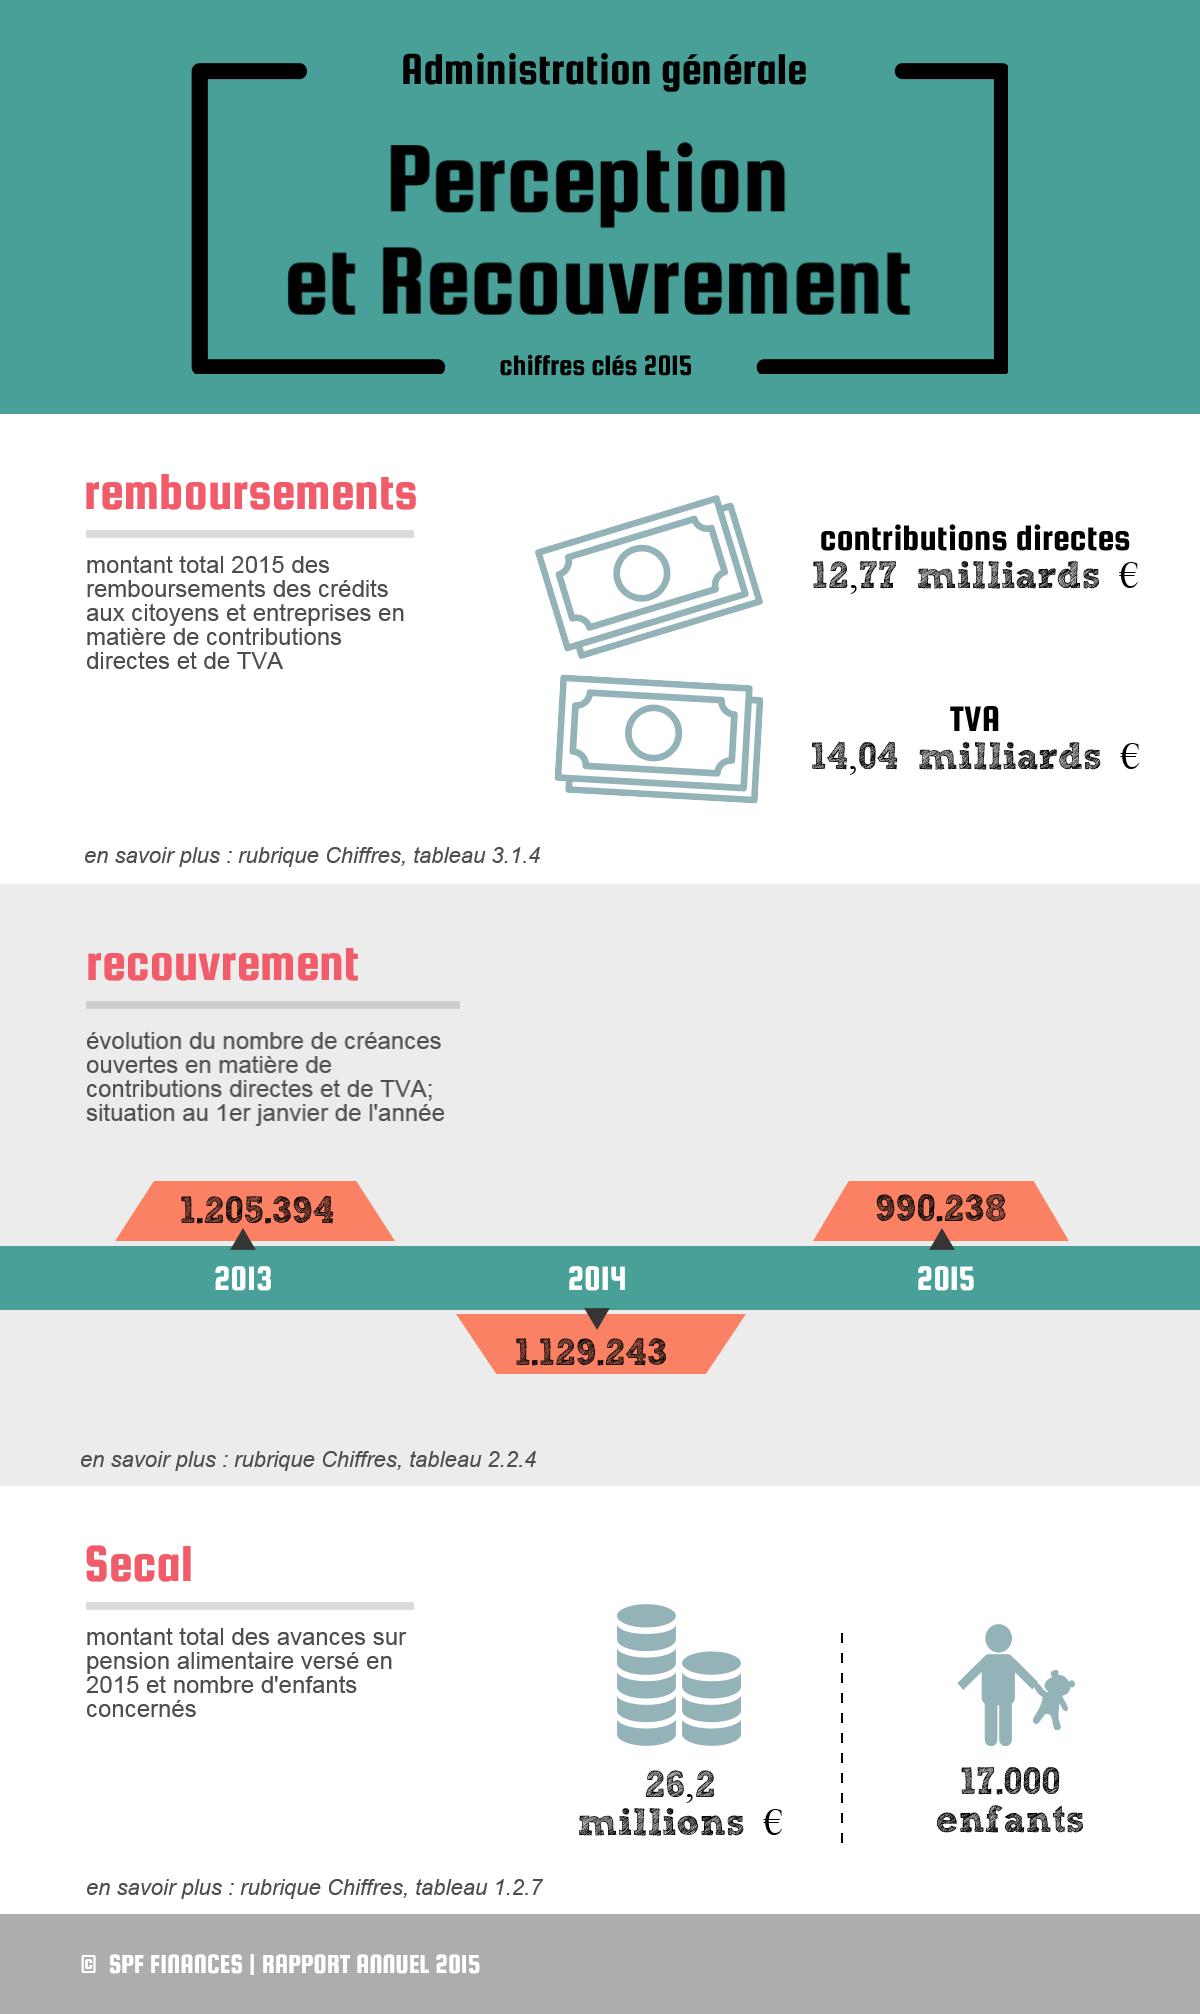 Remboursements des crédits aux citoyens et entreprises en matière de contributions directes et de TVA : 12,77 milliards € contributions directes / 14,04 milliards € TVA | Recouvrement (nombre de créances ouvertes en matière de contributions directes et de TVA; situation au 1er janvier de l'année) : 1.205.394 en 2013 / 1.129.243 en 2014 / 990.238 en 2015 | Secal (montant total des avances sur pension alimentaire versé en 2015 et nombre d'enfants concernés) : 26,2 millions € / 17.000 enfants